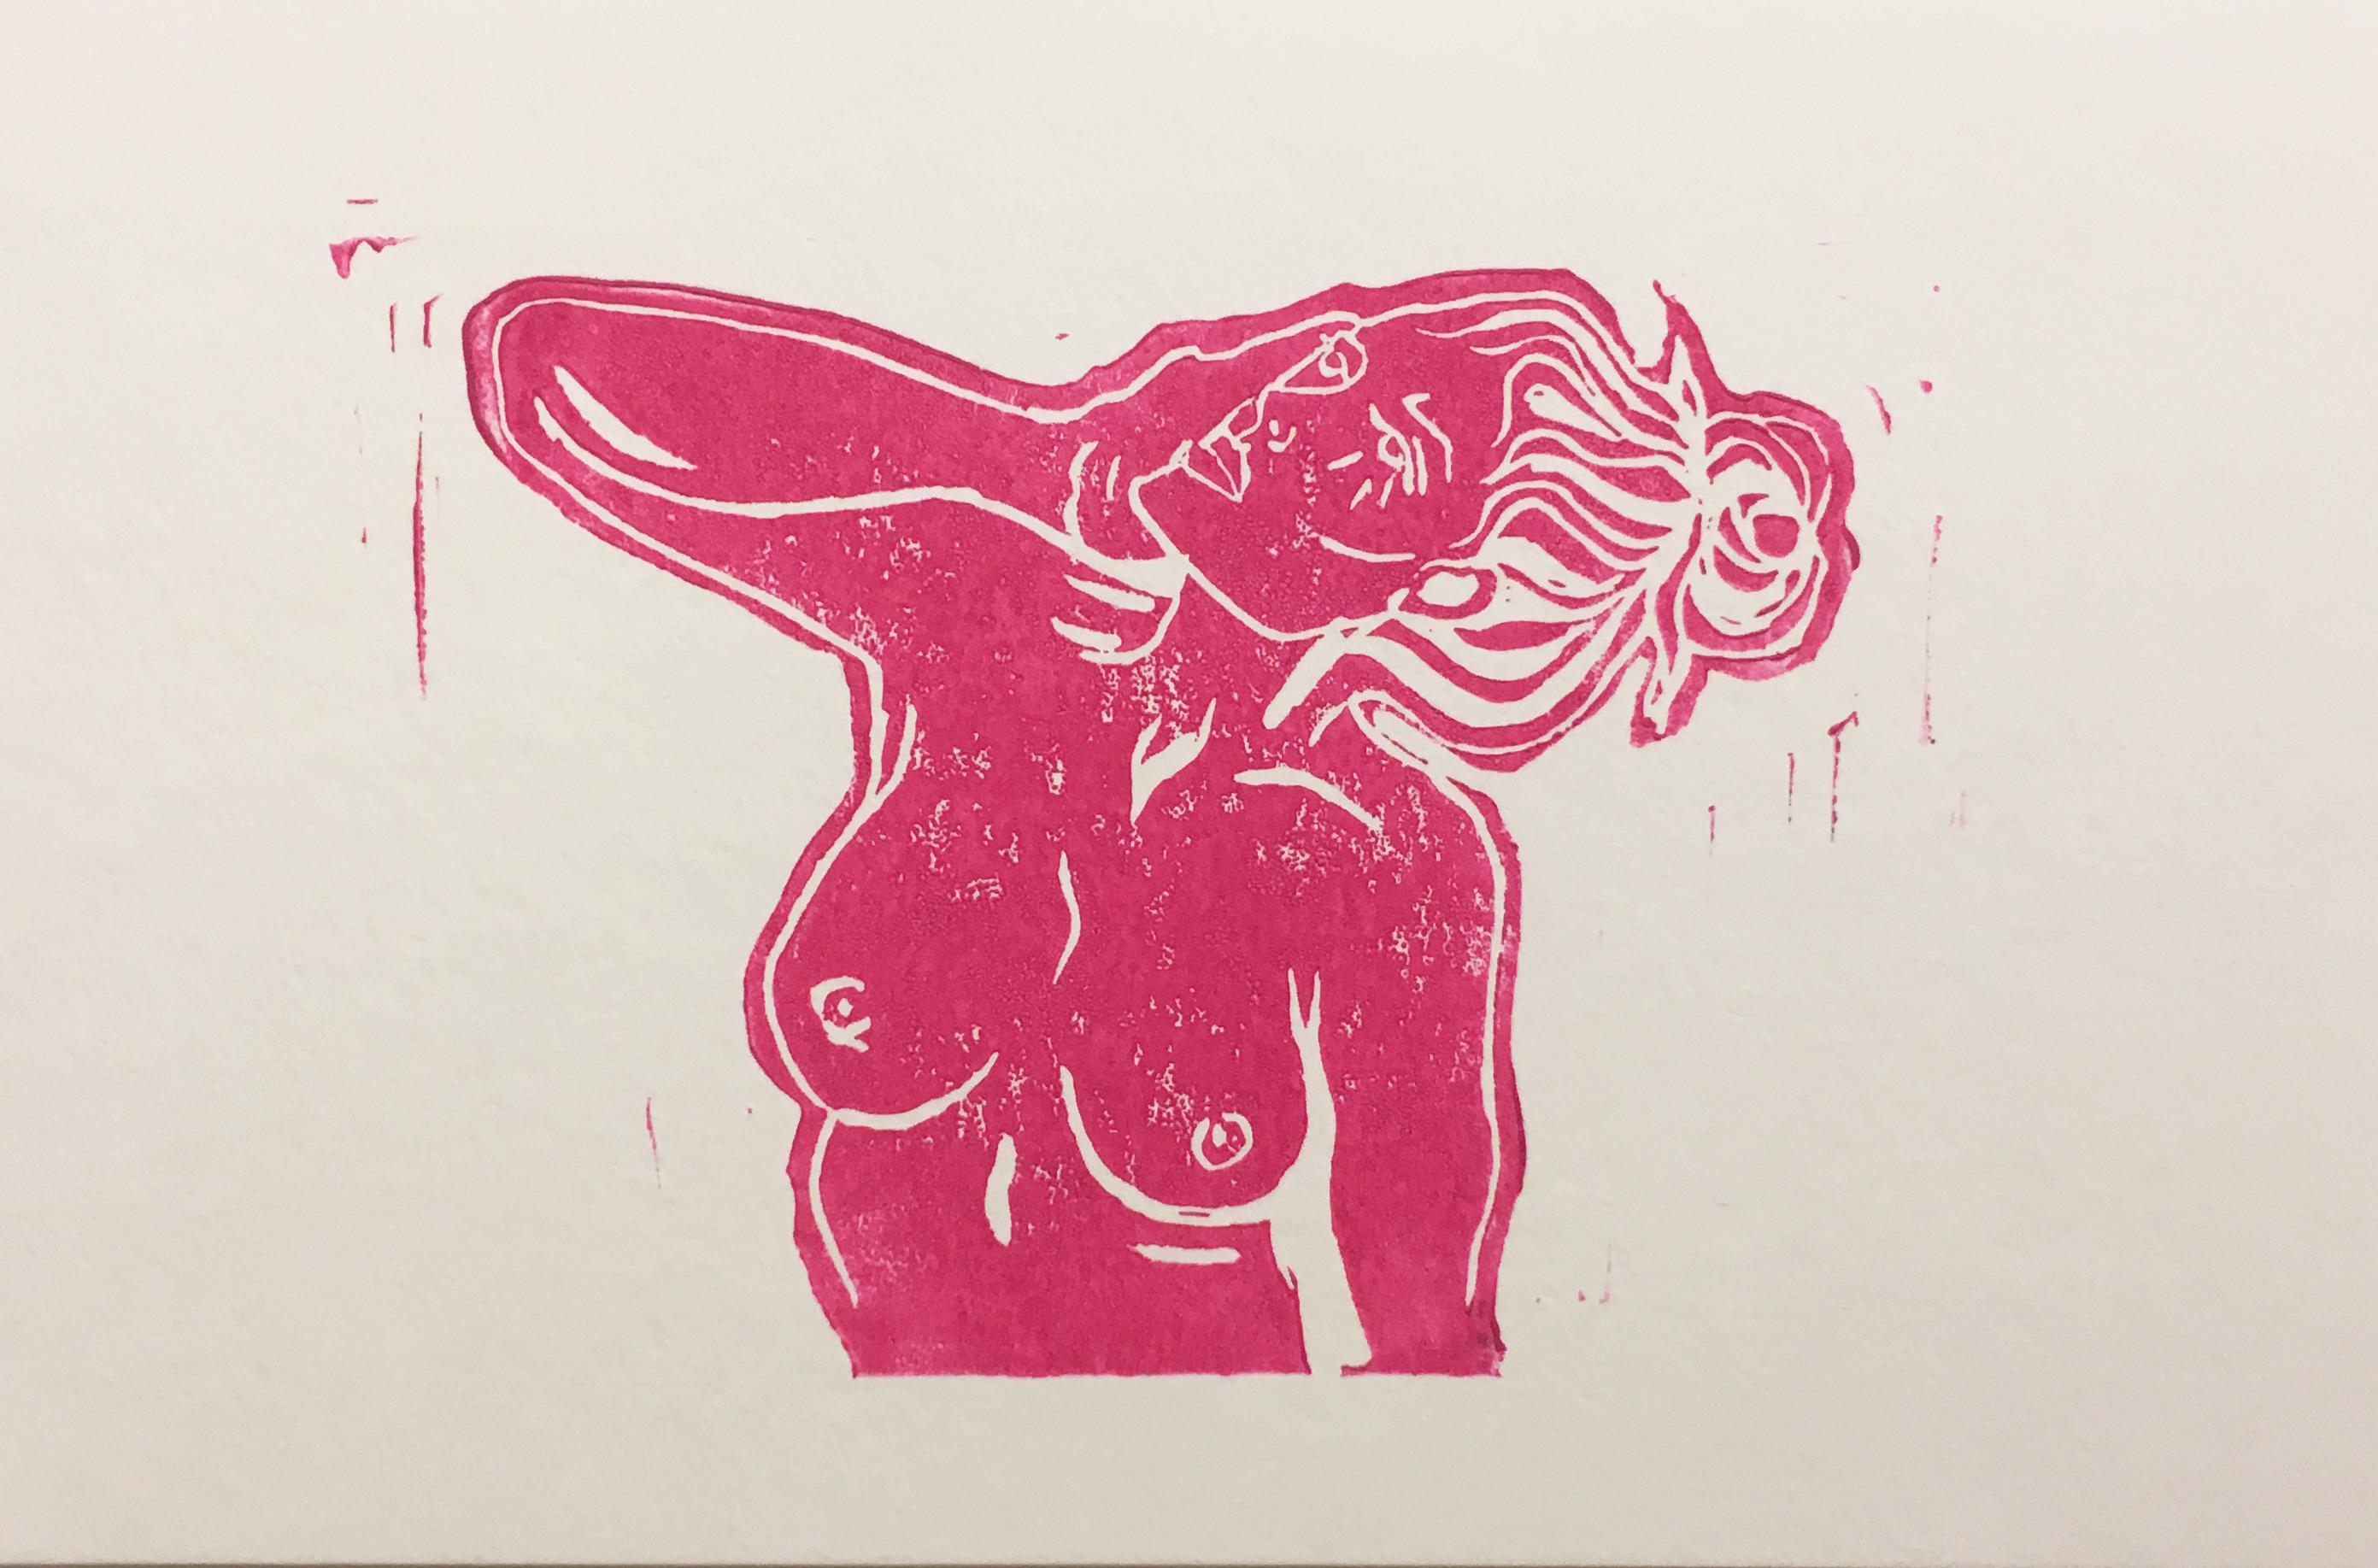 SarahGrace Figurative Art – Rosa Lady X, Blockdruck auf Papier, heißes rosa Frauporträt, nackte Figur